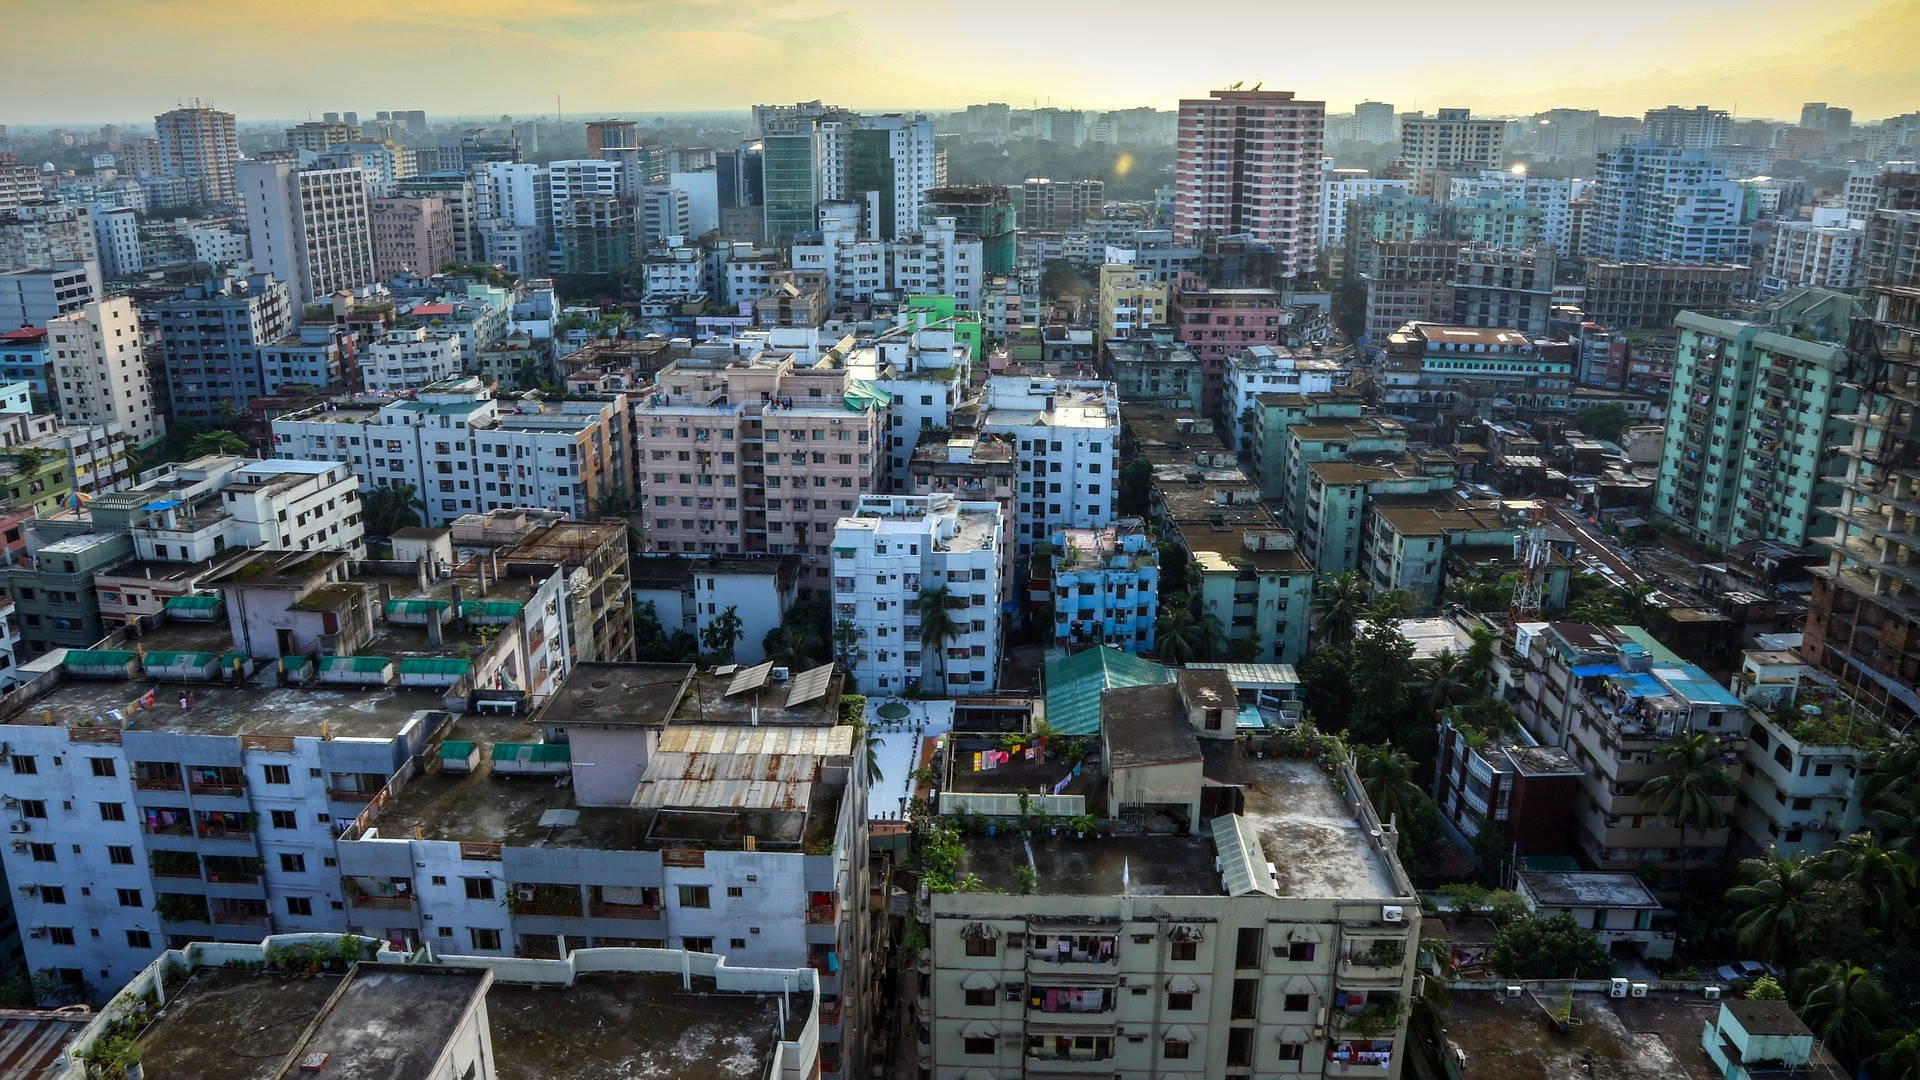 Bangladesh Urbanized Area Background